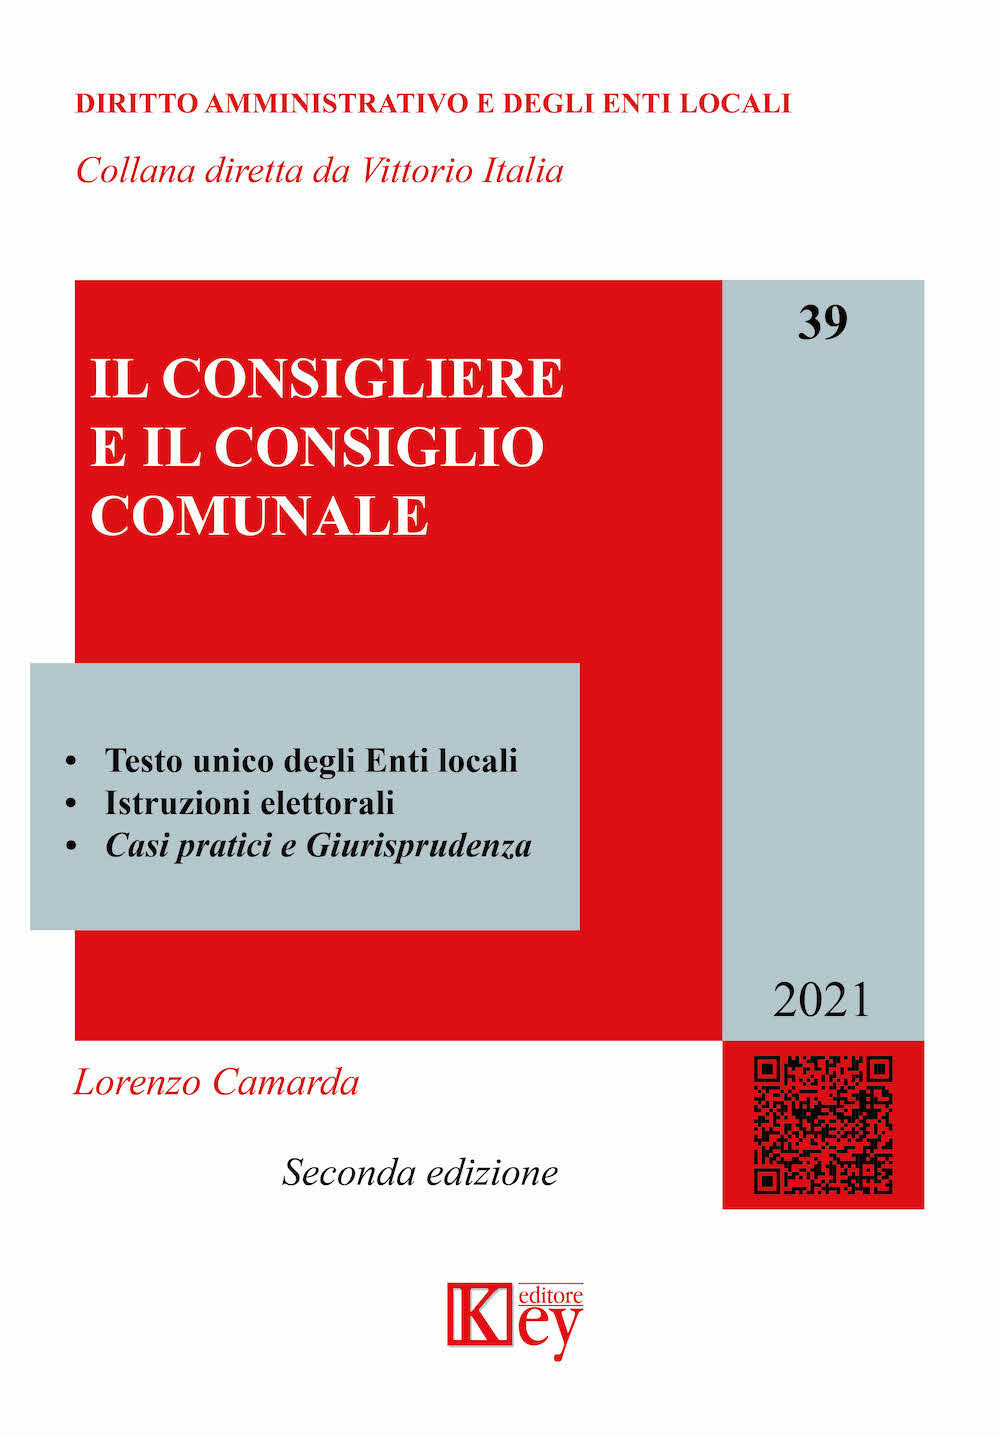 Libri Lorenzo Camarda - Il Consigliere E Il Consiglio Comunale NUOVO SIGILLATO, EDIZIONE DEL 06/03/2021 SUBITO DISPONIBILE